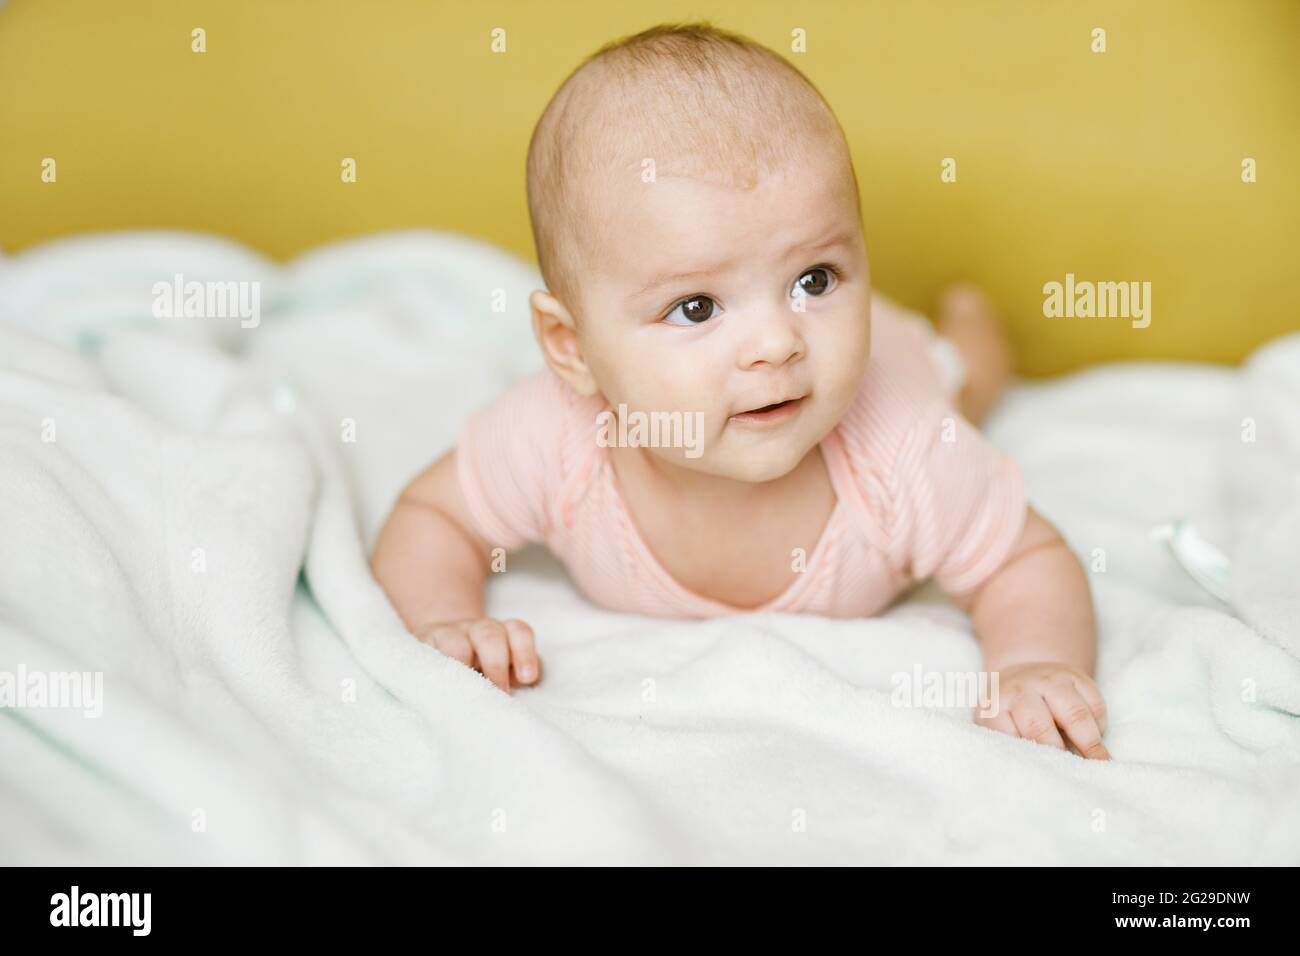 Entzückendes Baby im sonnigen Schlafzimmer. Das neugeborene Baby ruht in einer warmen, weichen Bettdecke. Lächelndes Kind, das die Kamera anschaut. Stockfoto